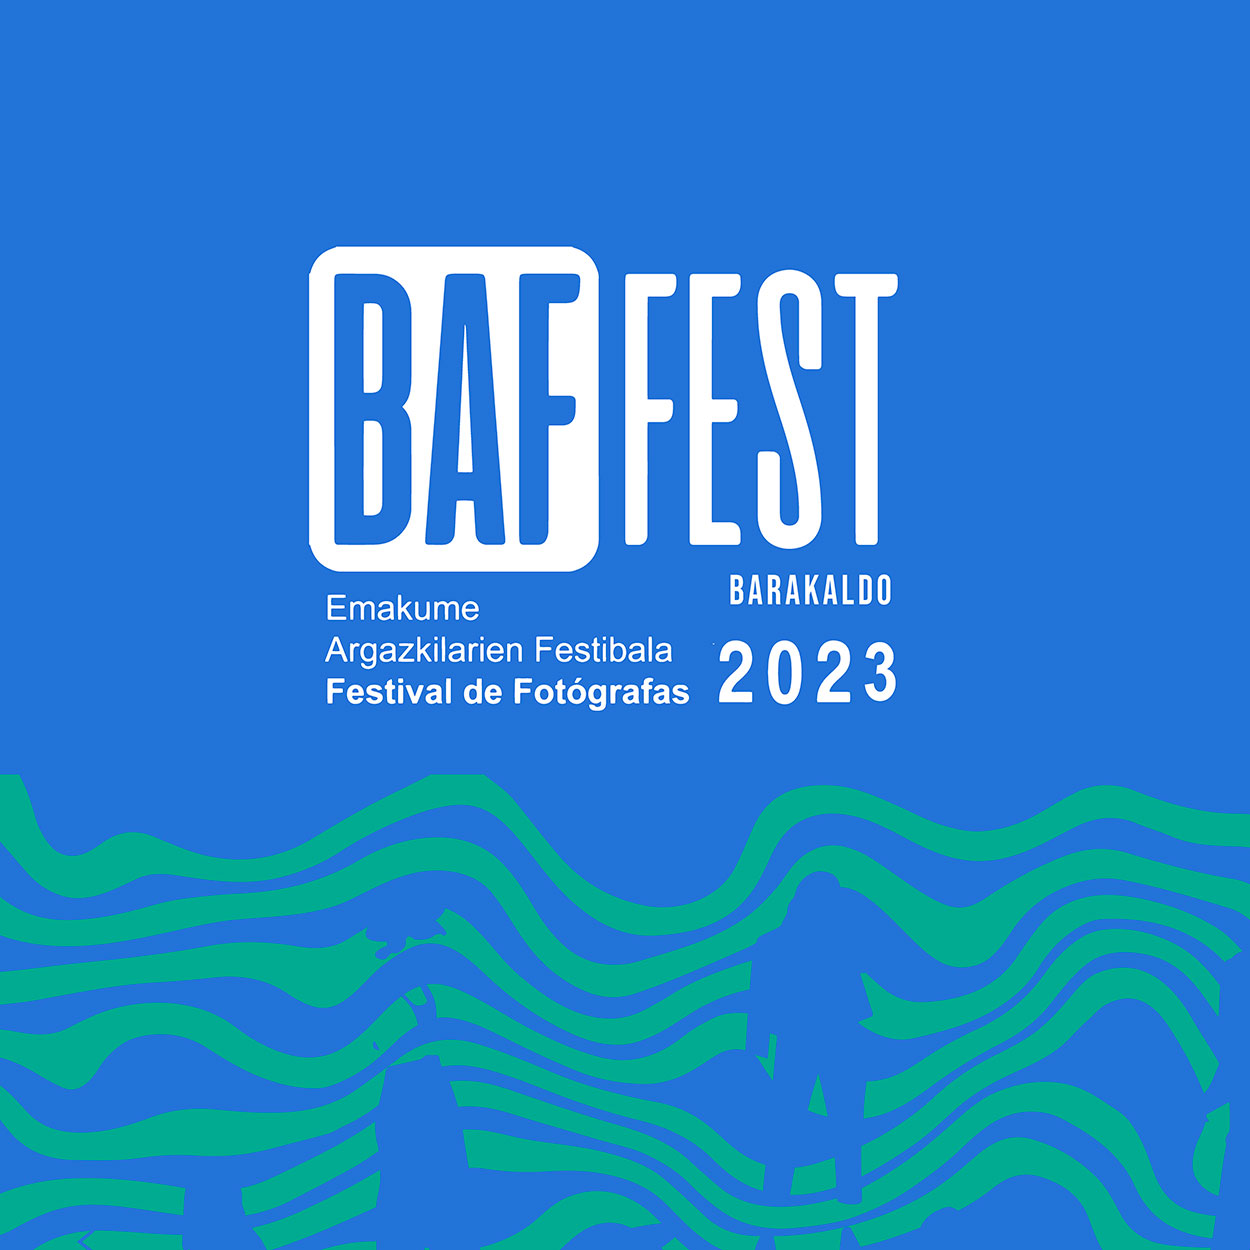 Susana Llano seleccionada en Baffest 2023 y conferencia de Meritxell Ahicart ganadora de Baffest 2022 en Blackkamera